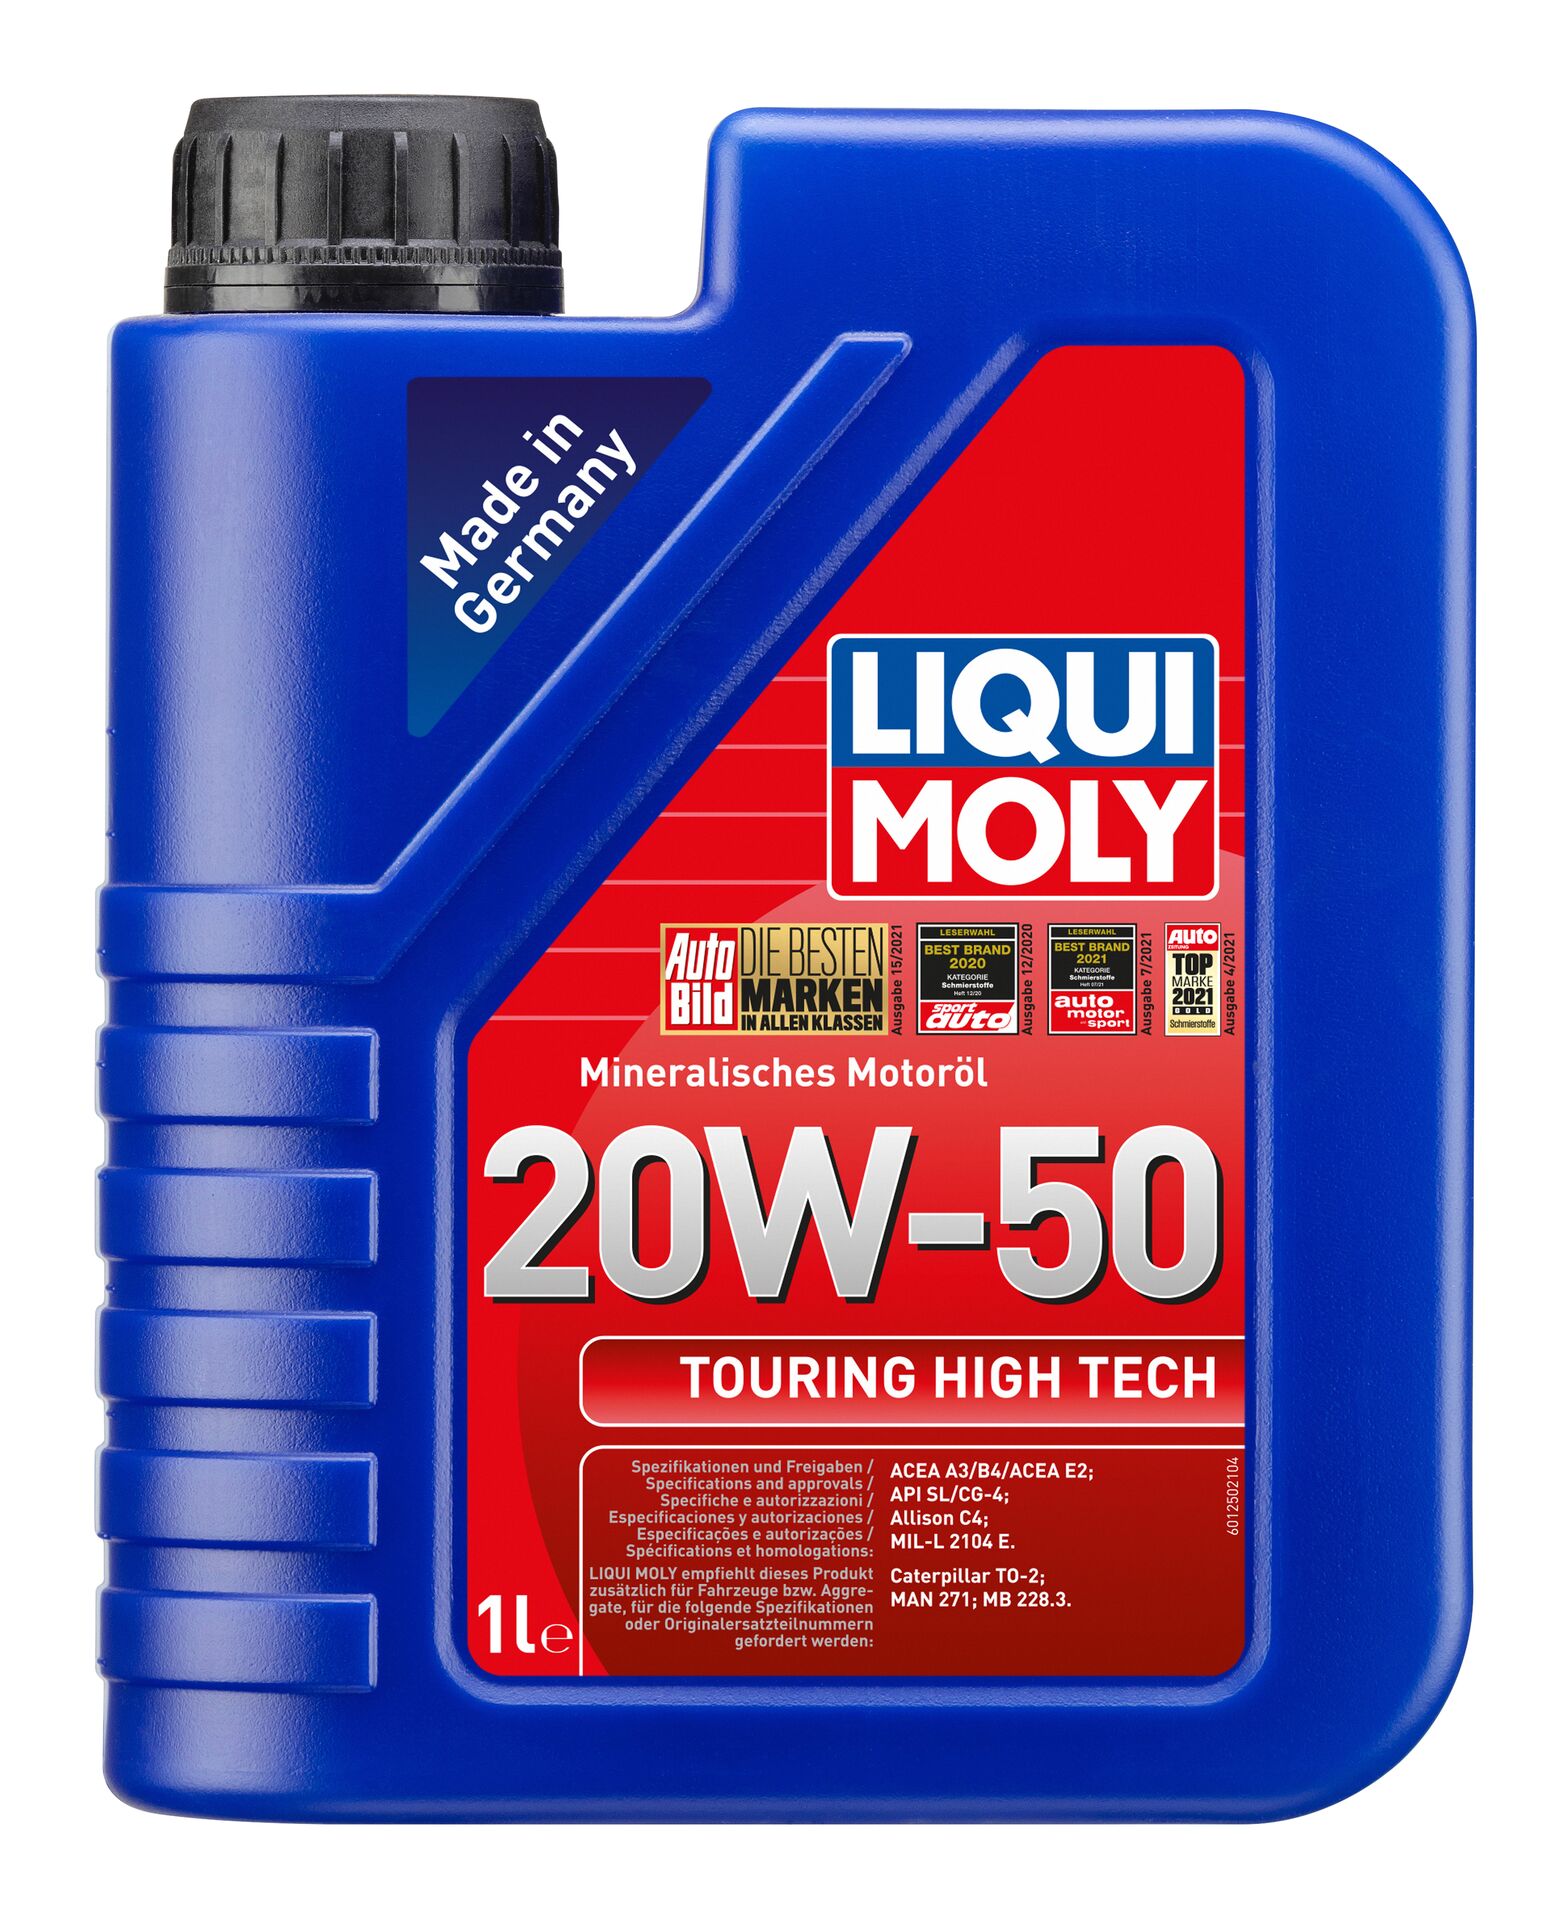 Liqui Moly Touring High Tech 20W-50 Mineralisches Motoröl Motorenöl 1L